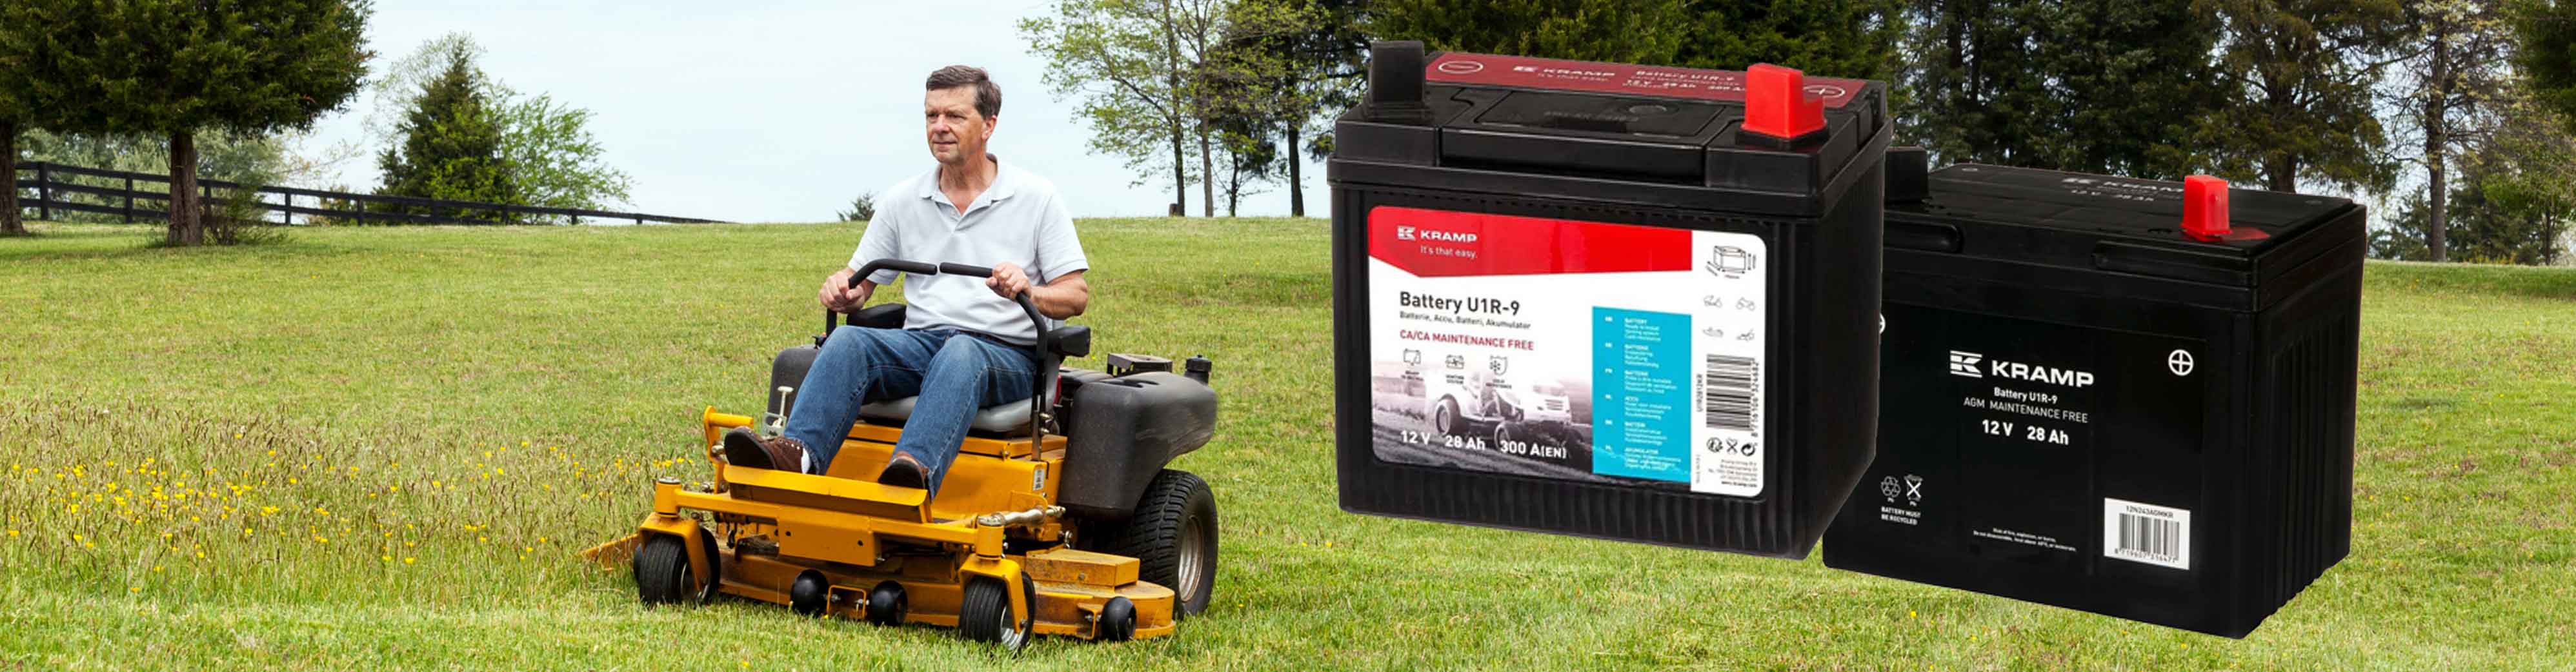 Vårens nyhet: Kramp batterier till gräsklippare & ATV:er